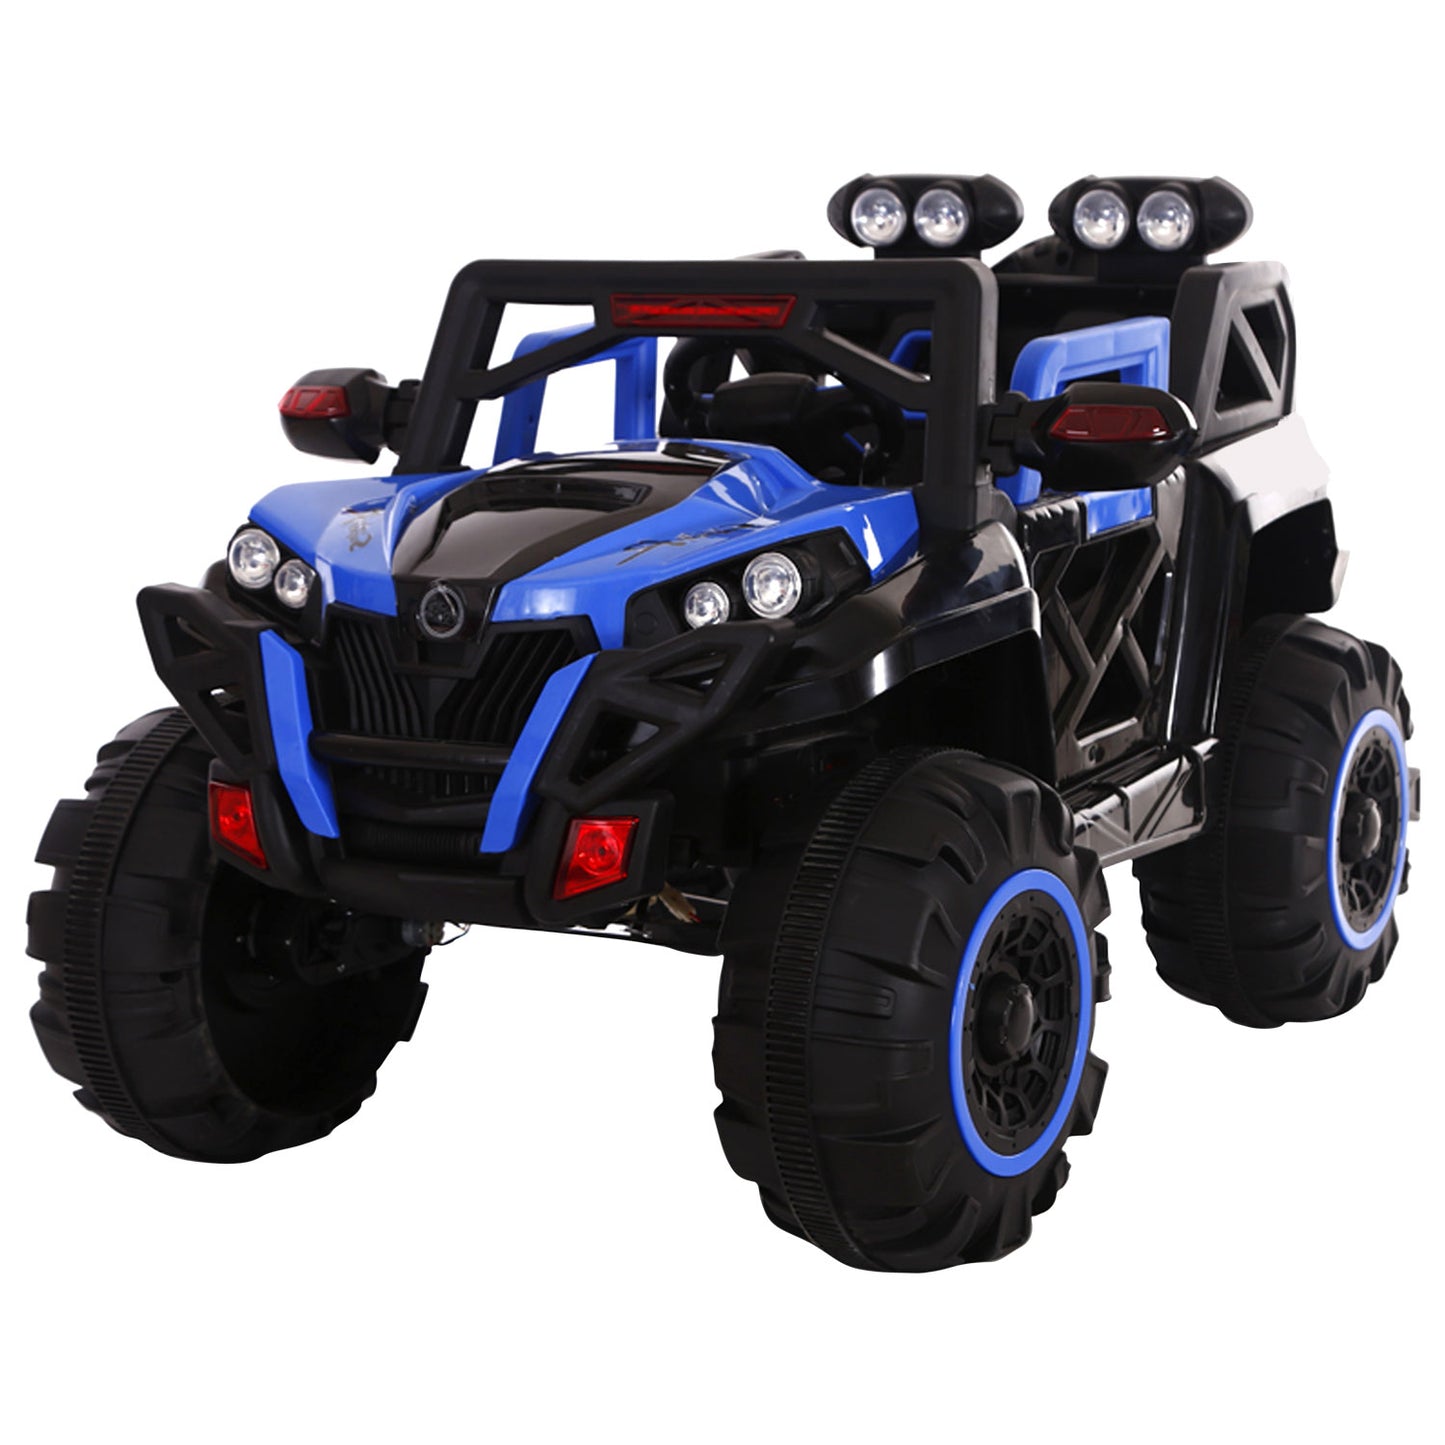 Recon 250 ATV